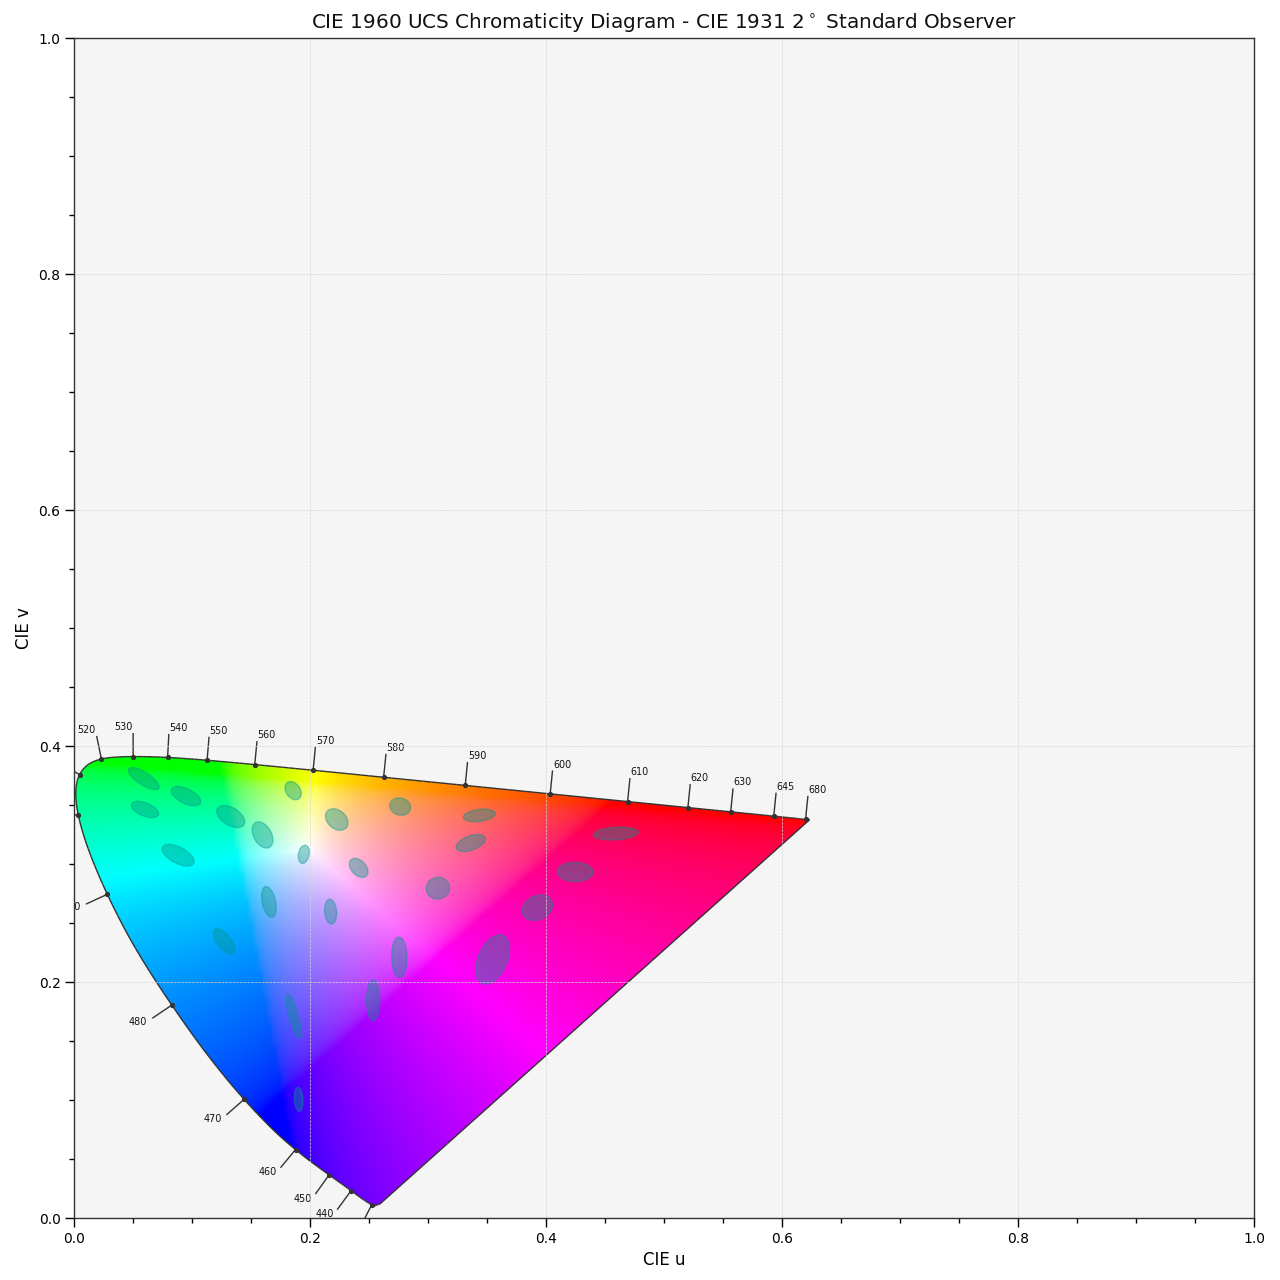 plot_ellipses_MacAdam1942_in_chromaticity_diagram_CIE1960UCS